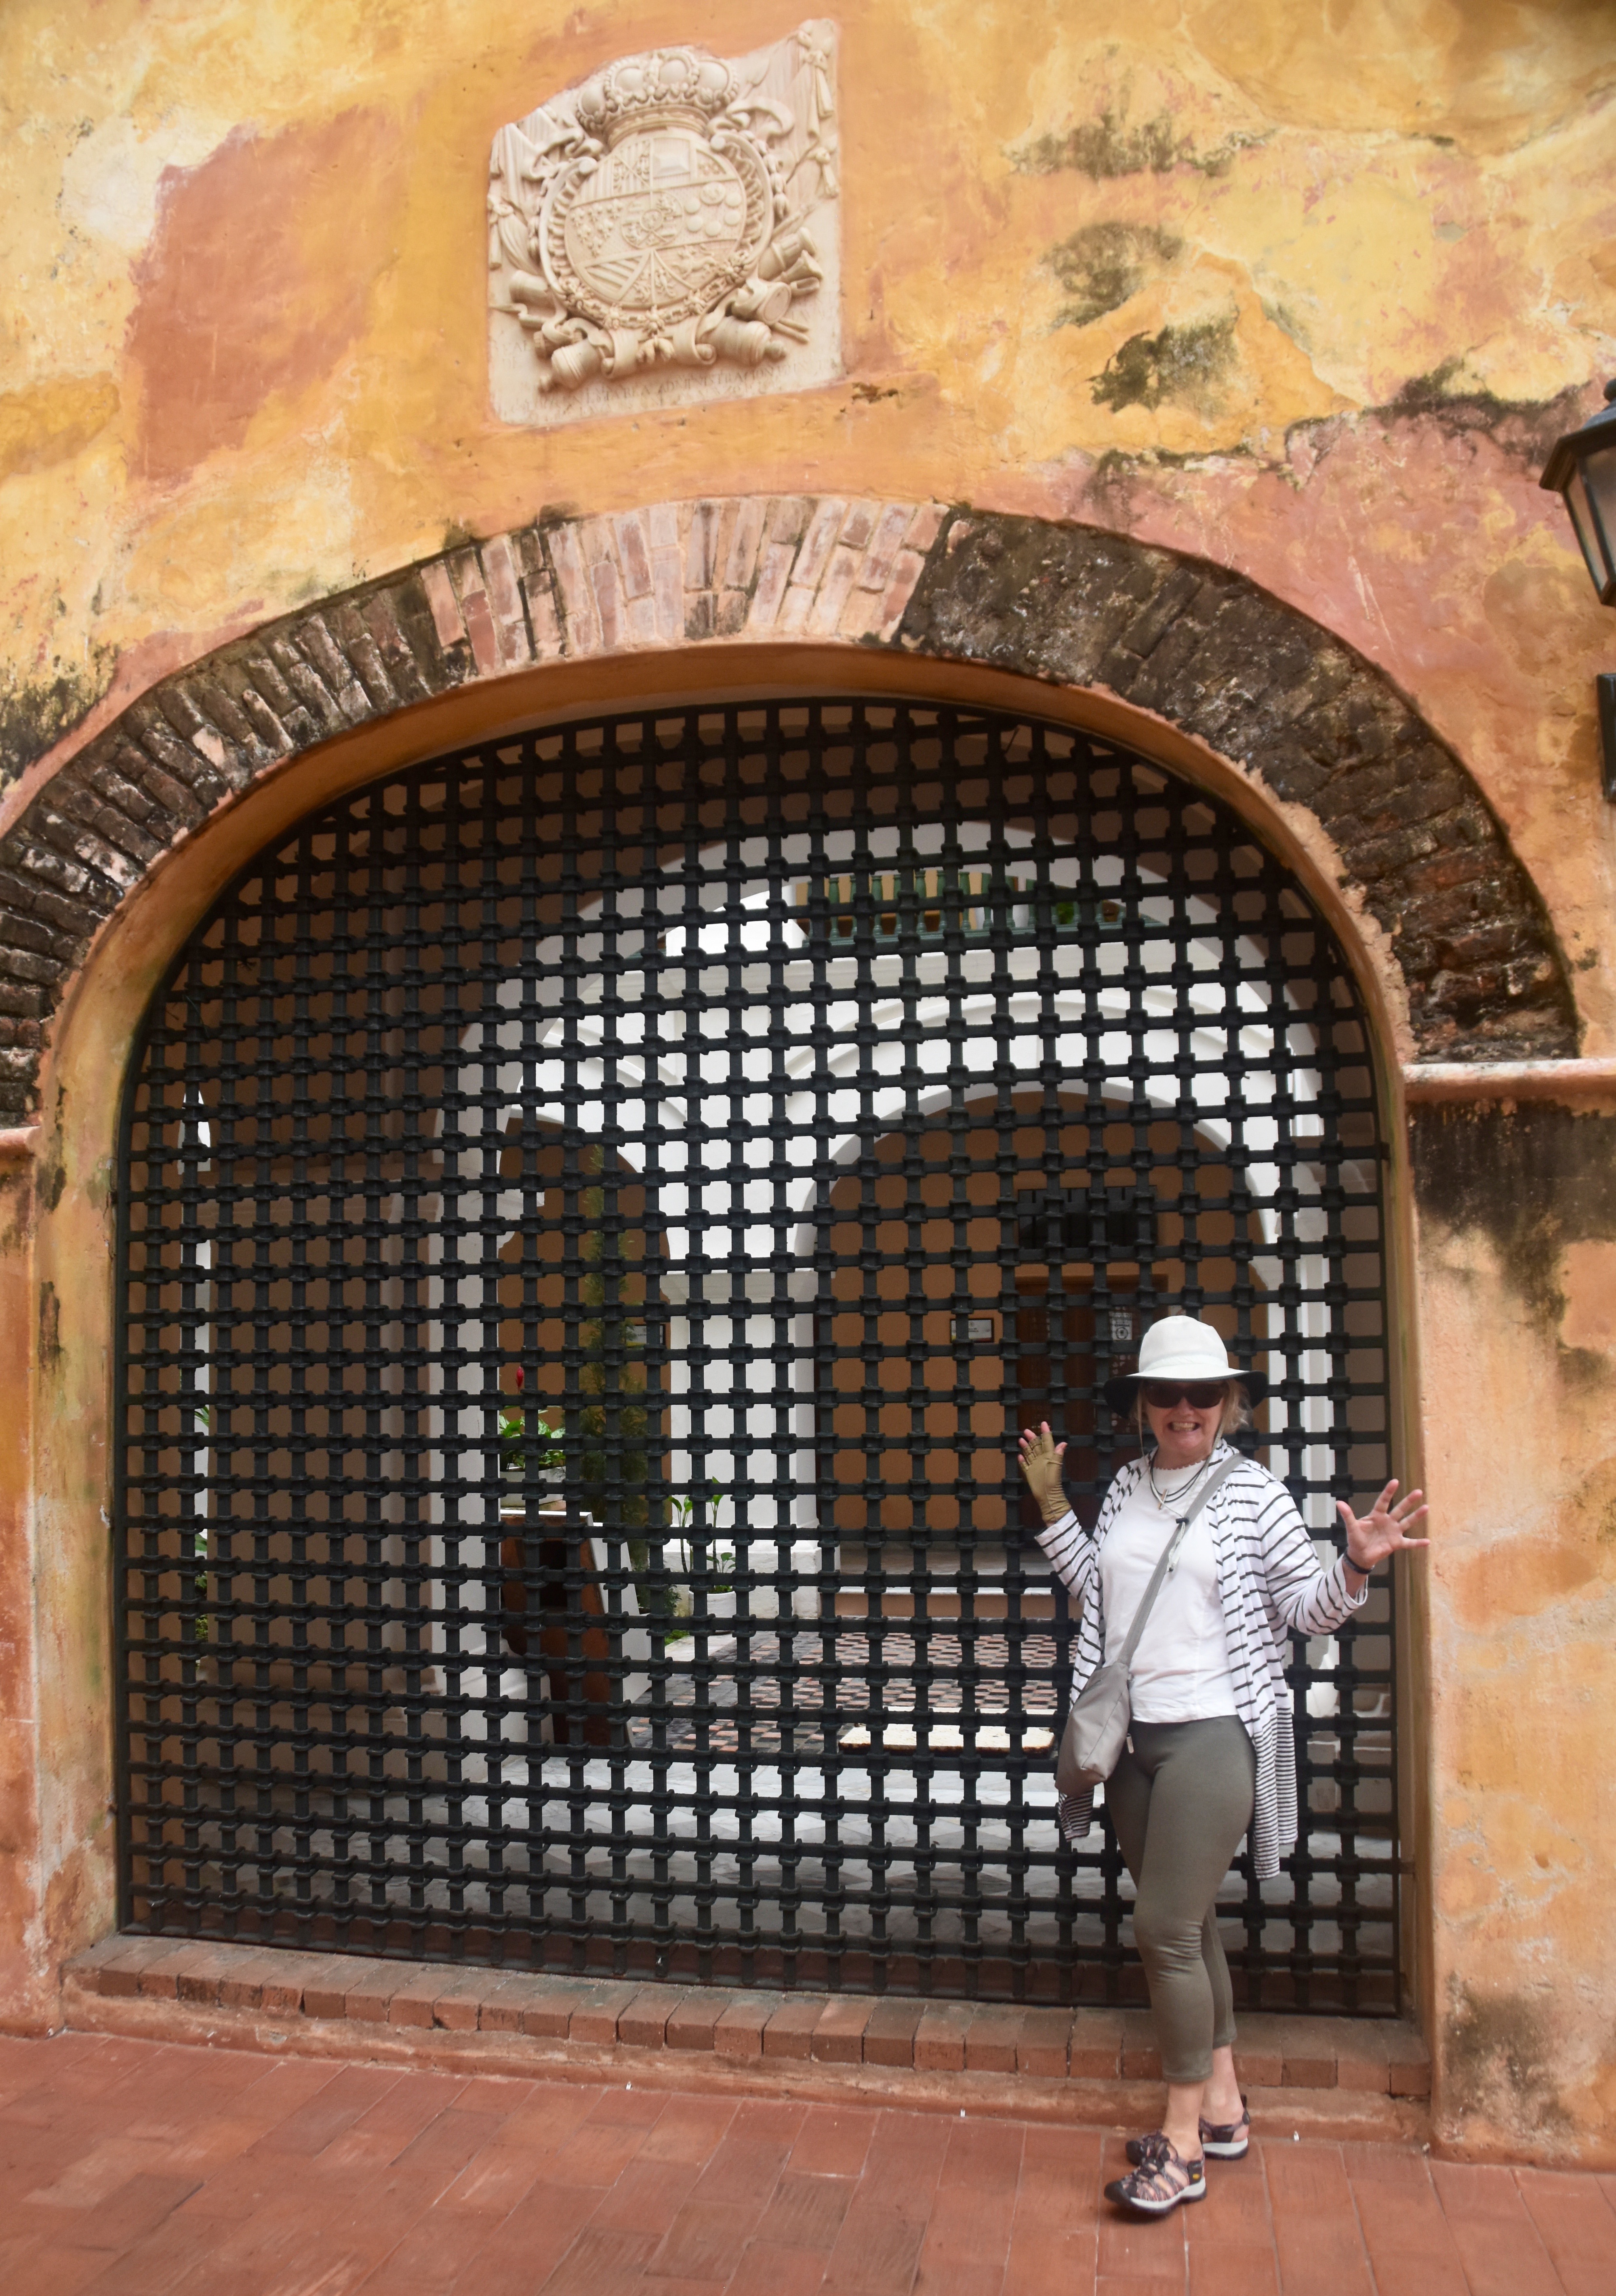 Inquisition Gate, Cartagena